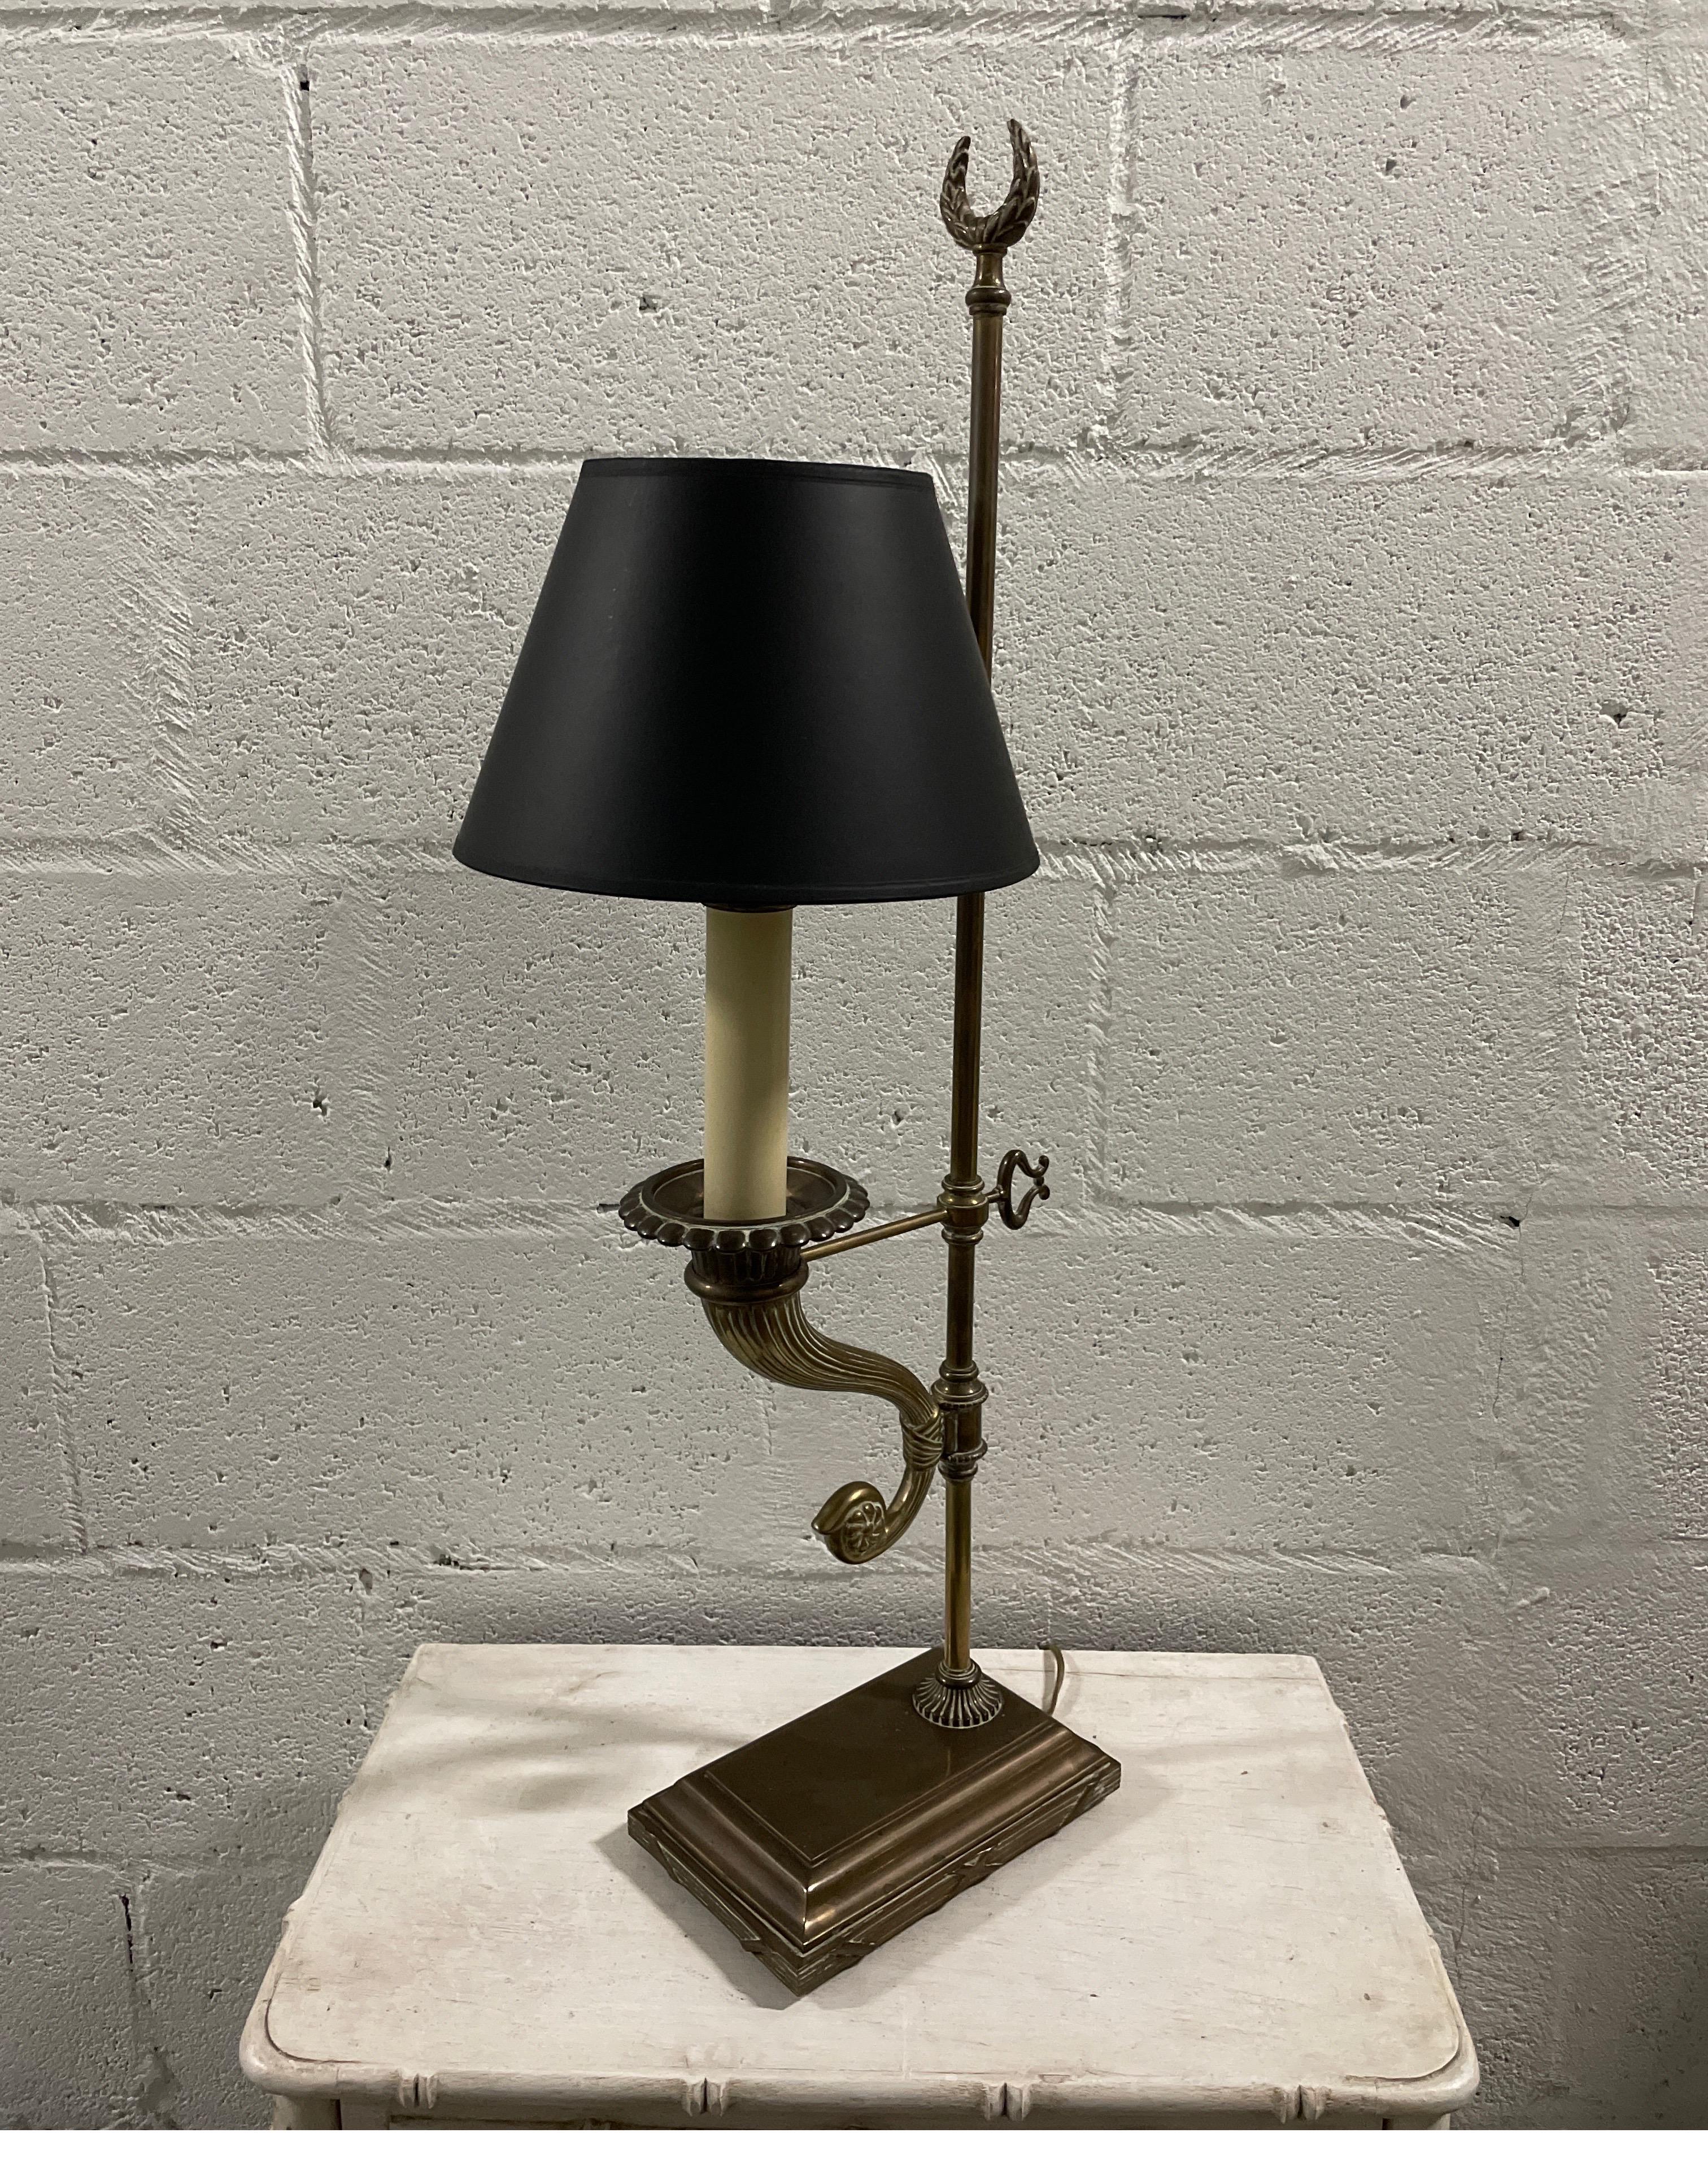 Horn of Plenty Lampe aus Messing mit schöner Originalpatina und schwarzem Schirm von Chapman.